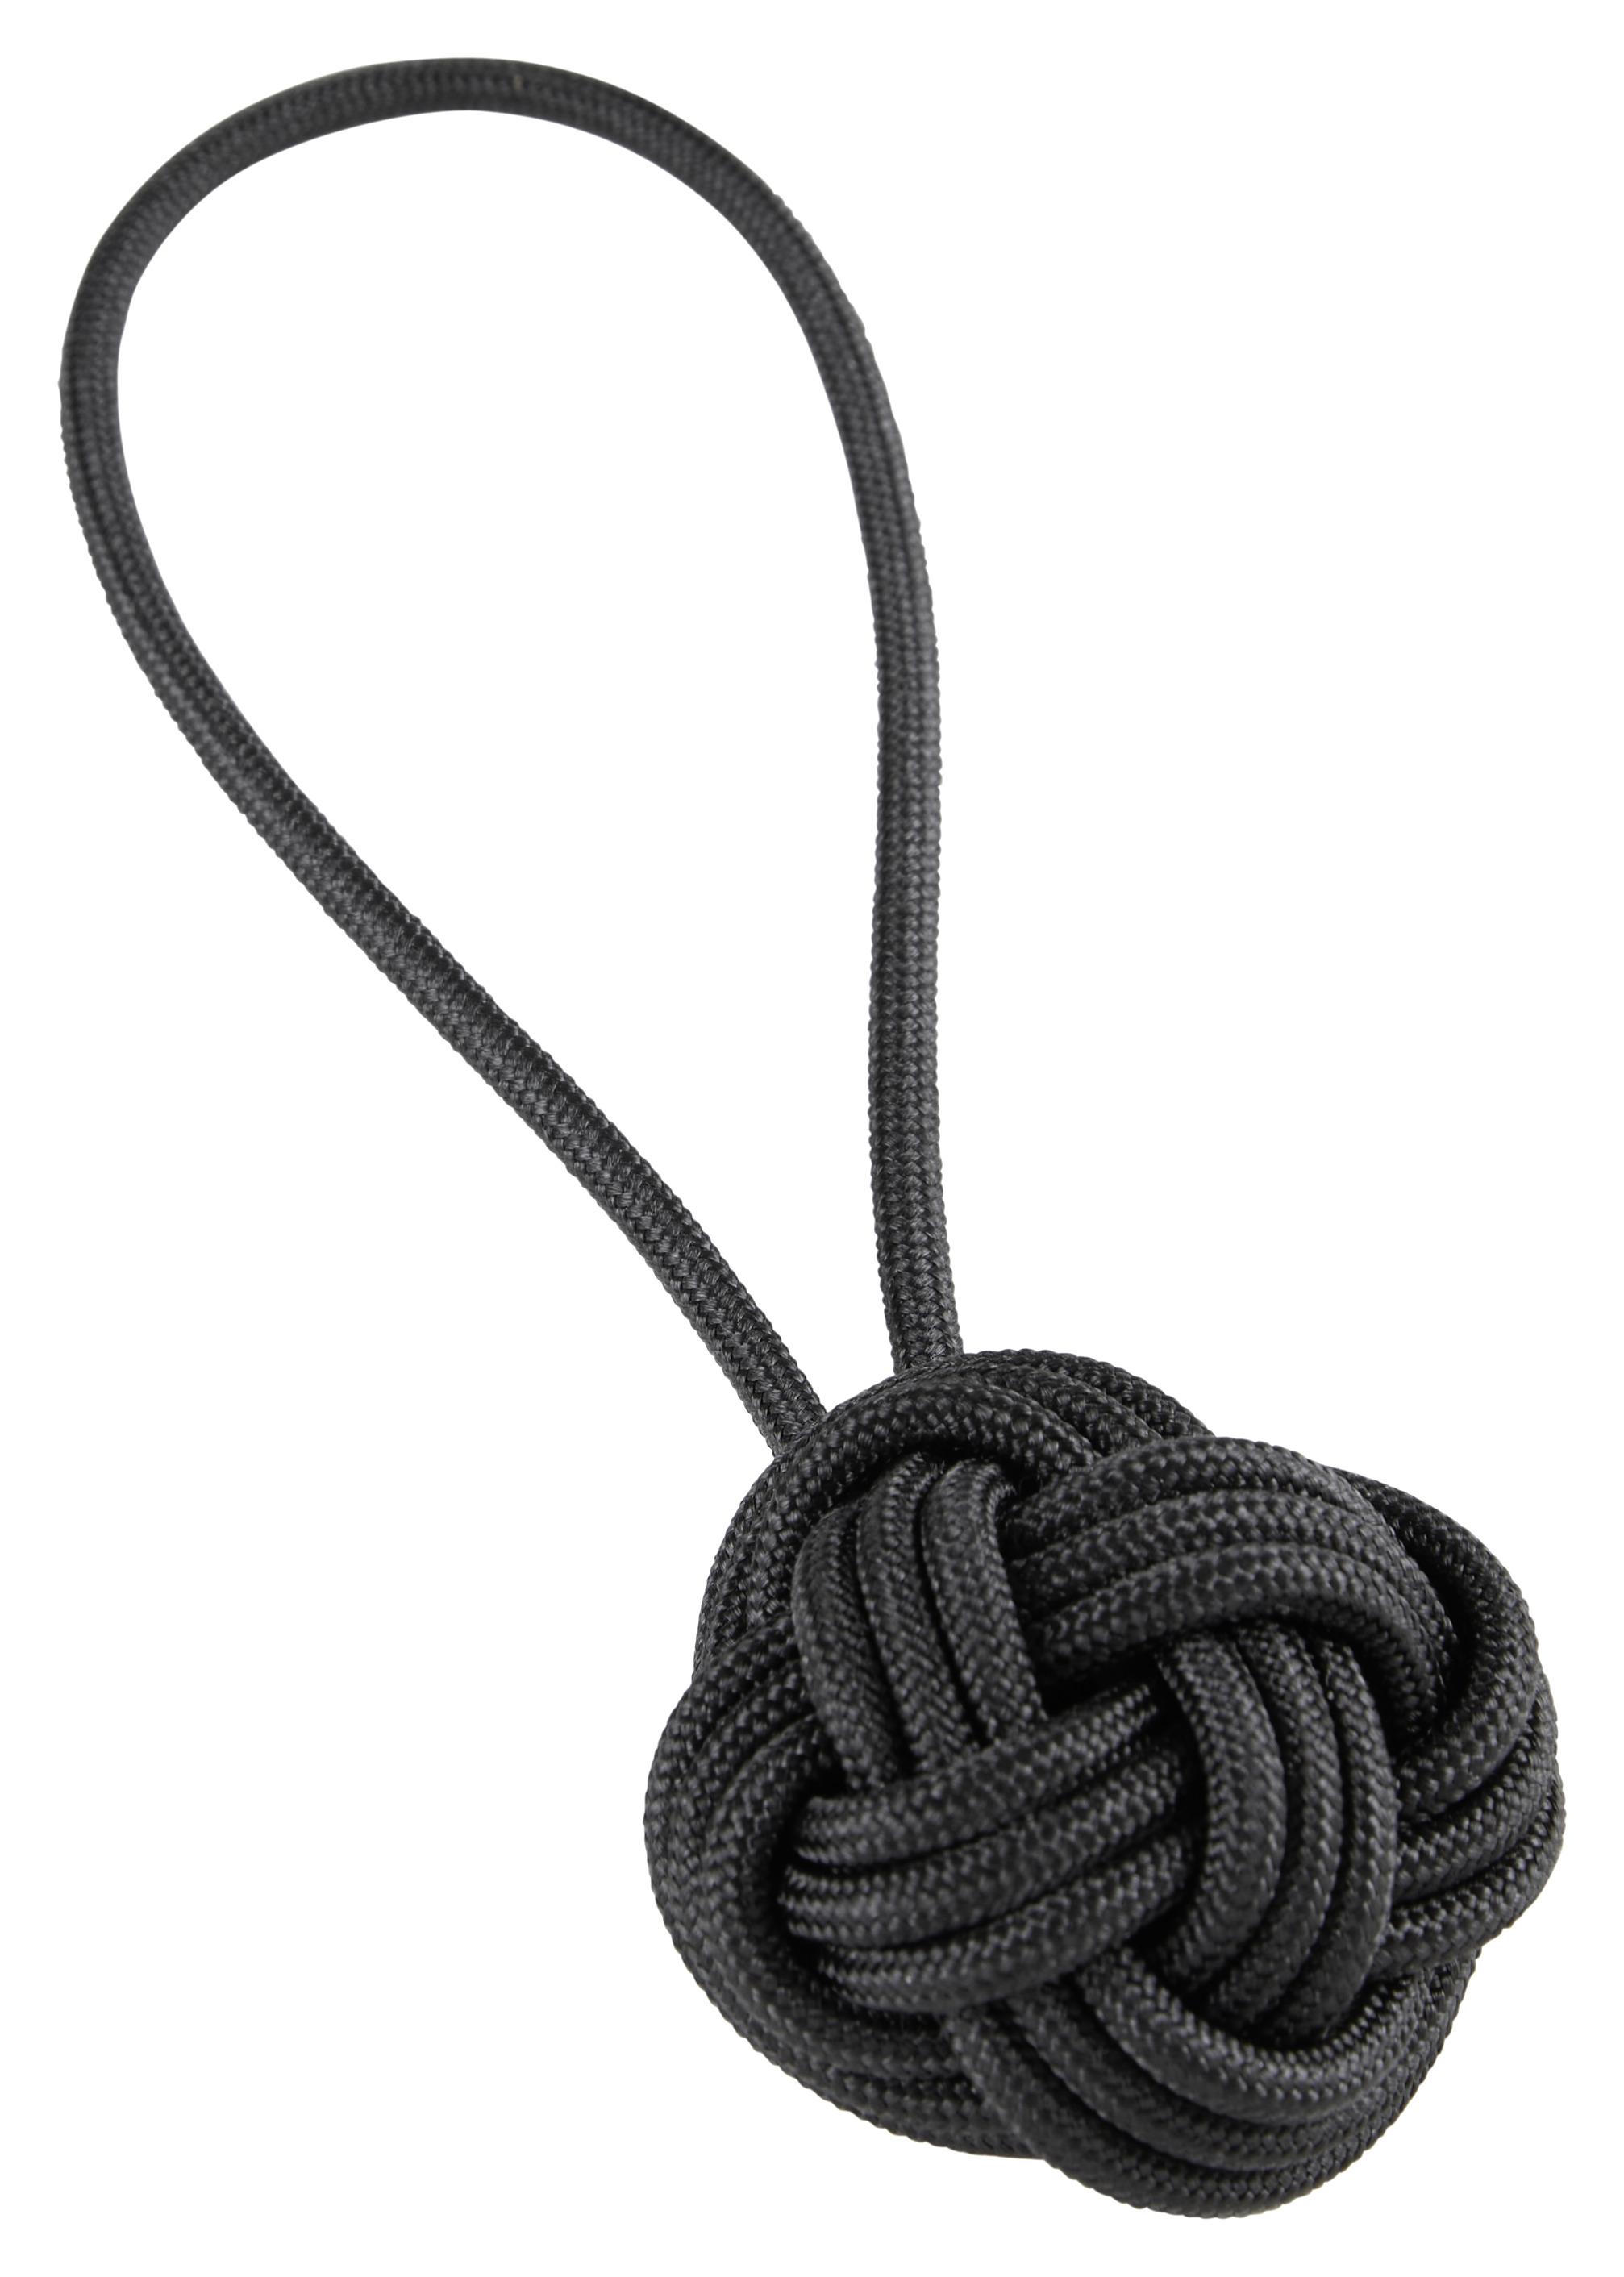 Raffhalter Knoten in Schwarz - Schwarz, Textil (5cm) - Modern Living